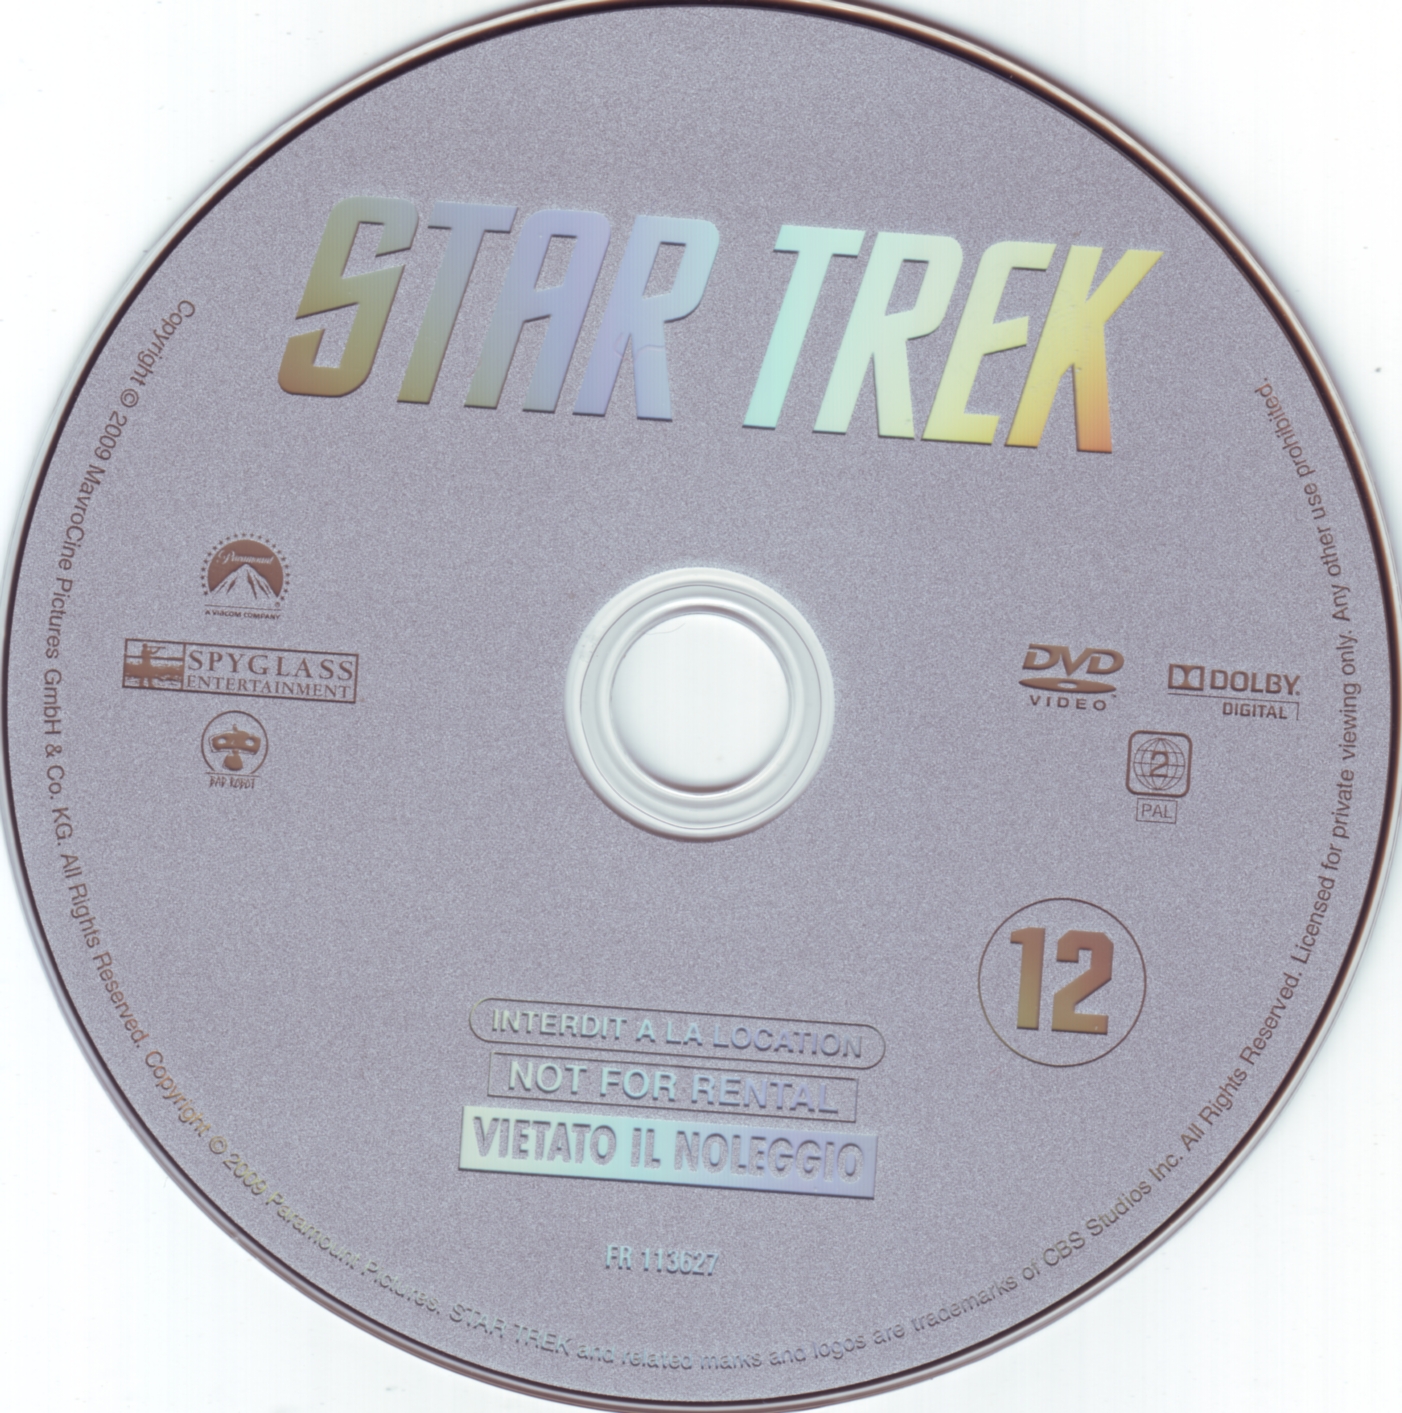 Star trek (2009)